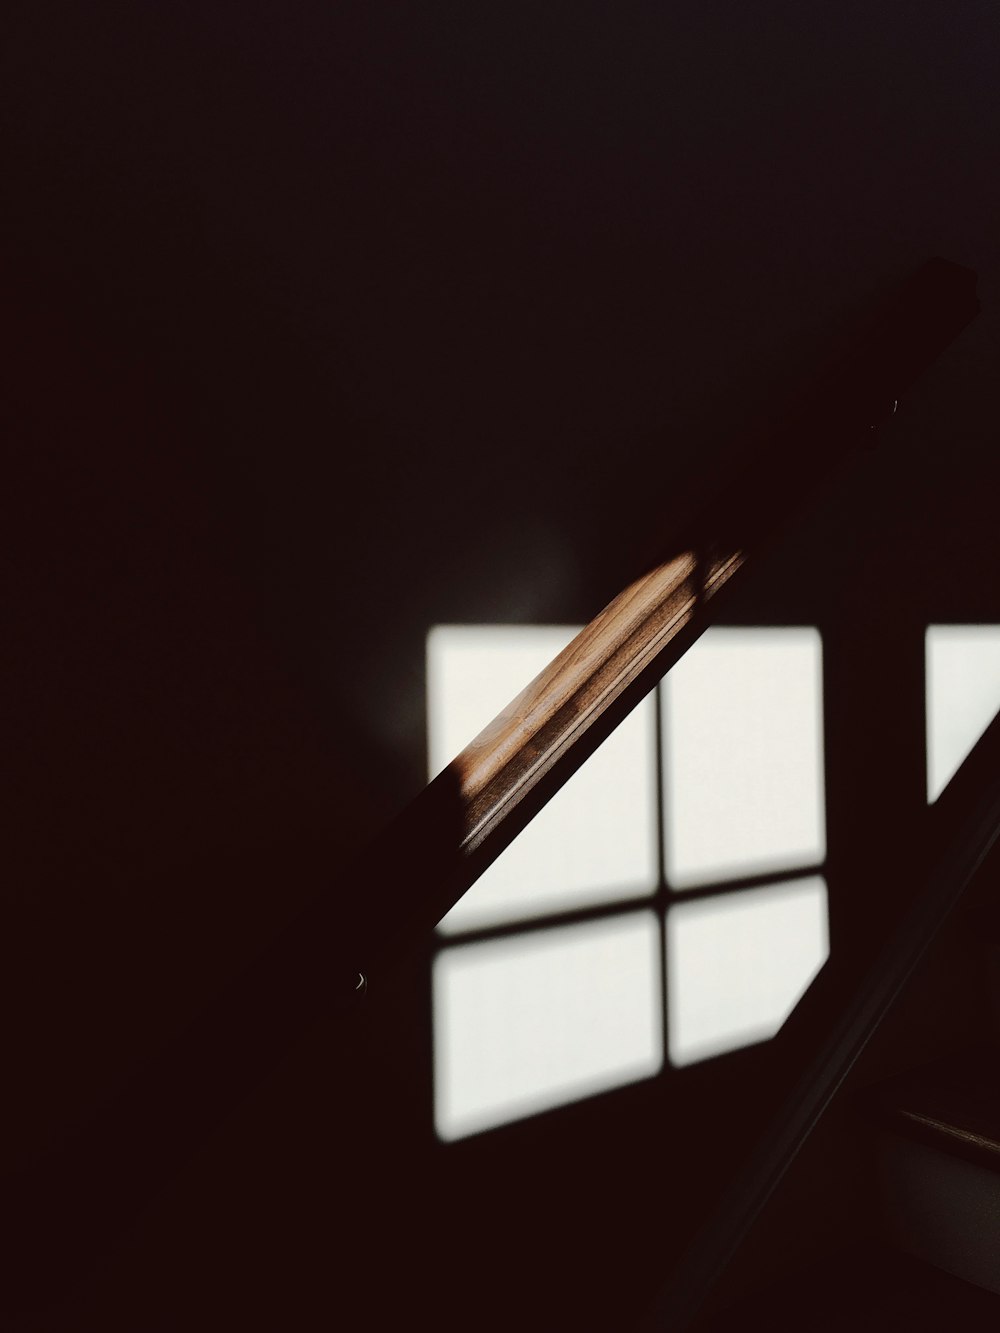 Um tiro sombrio de um bannister de madeira iluminado por luz fraca da janela